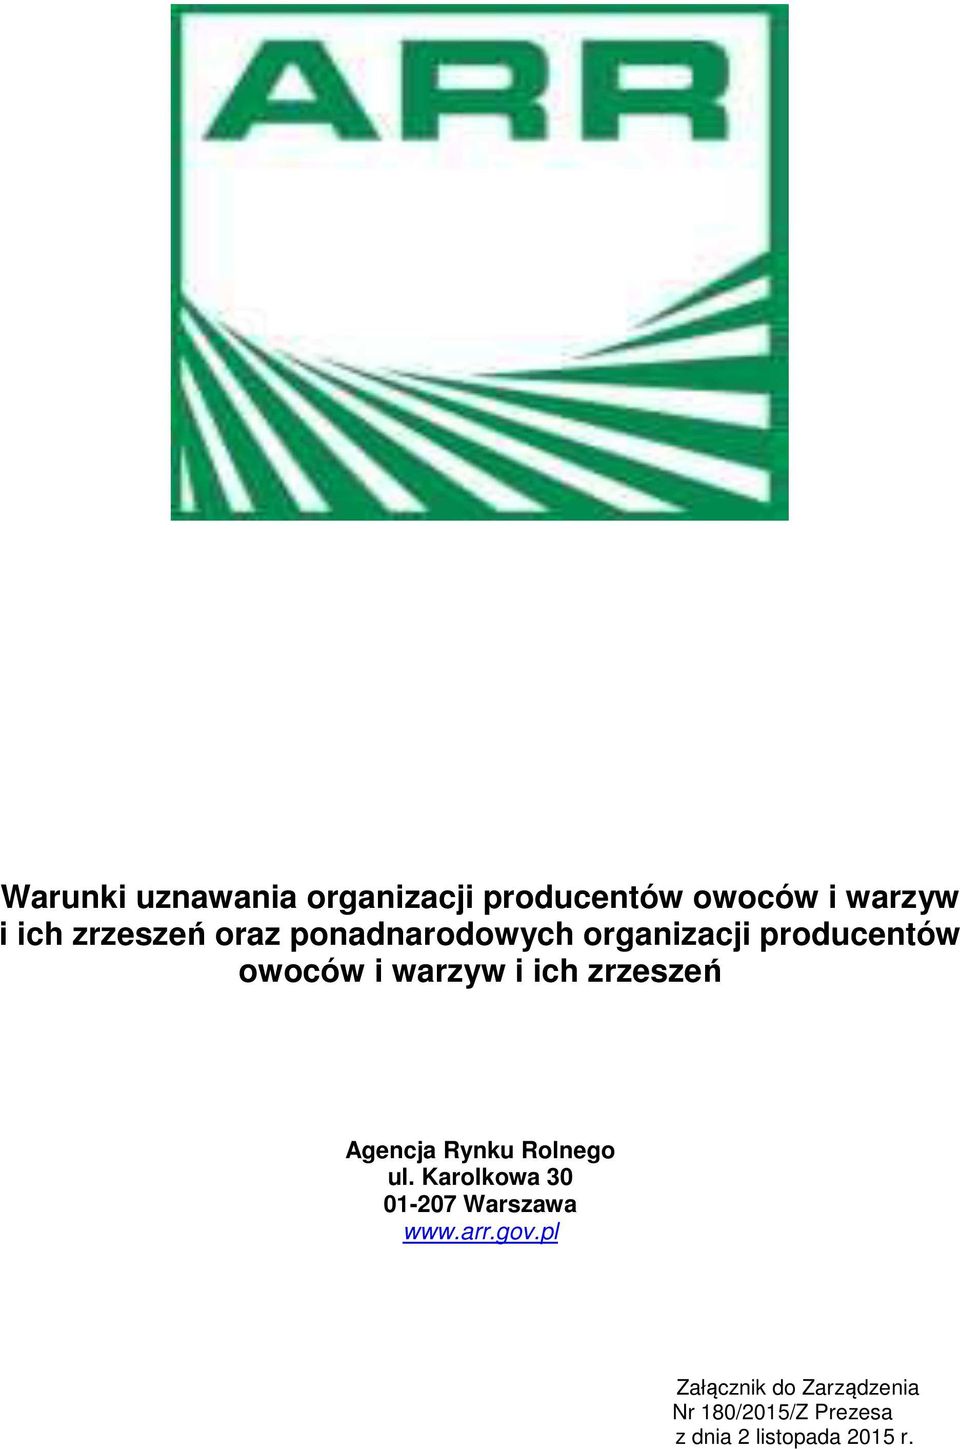 zrzeszeń Agencja Rynku Rolnego ul. Karolkowa 30 01-207 Warszawa www.arr.